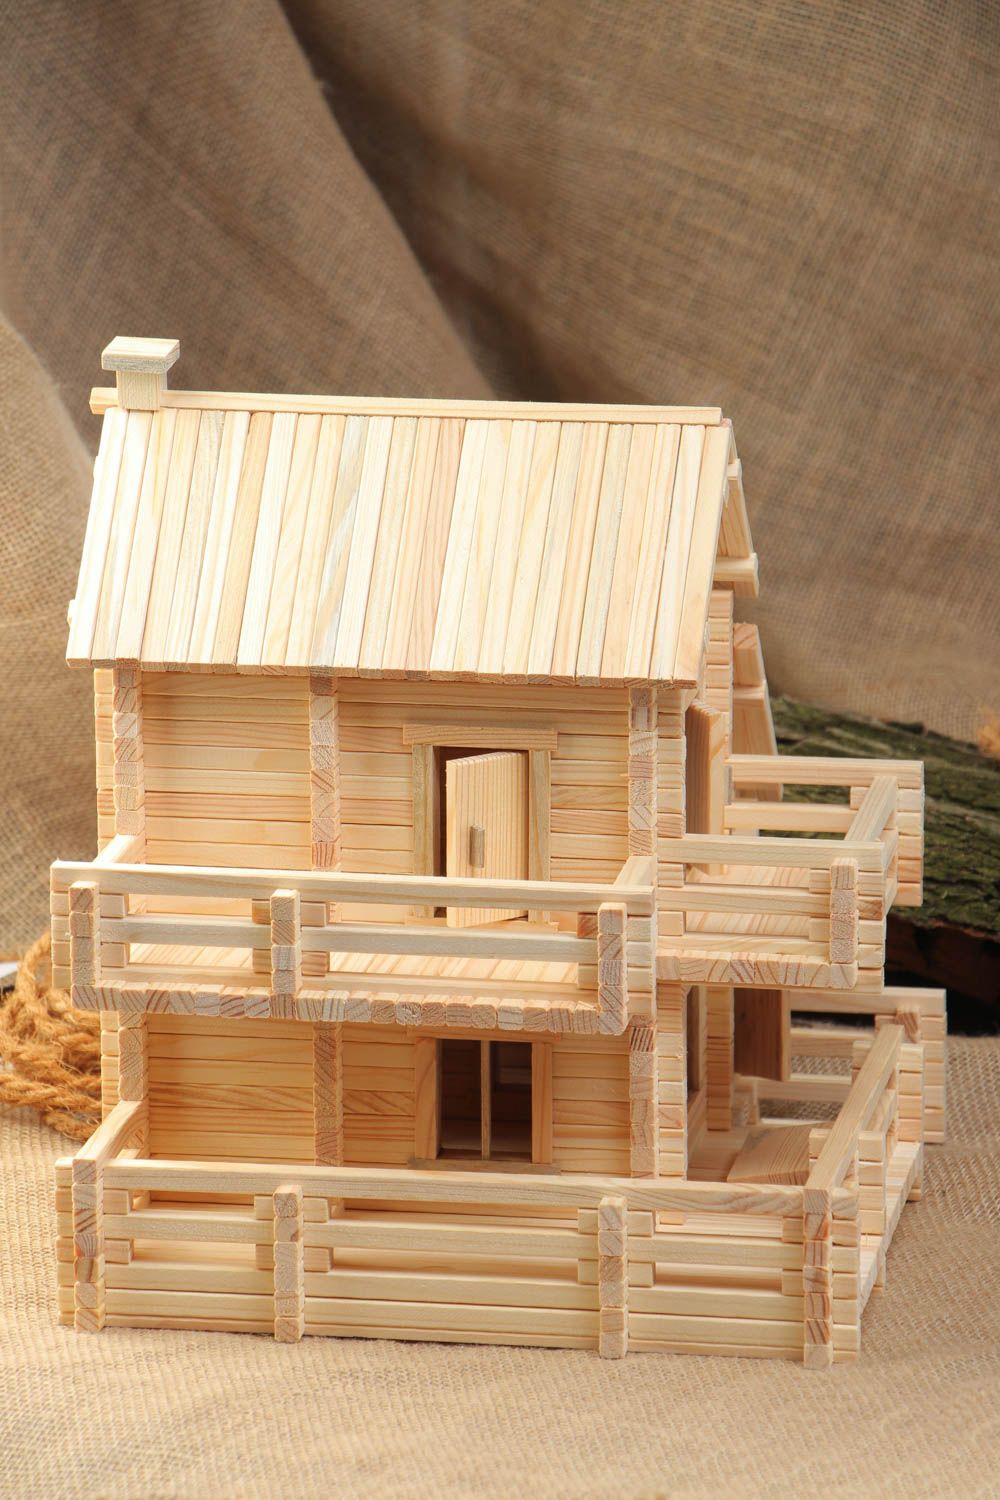 Jeu de construction en bois fait main pratique 445 pièces originales pour enfant photo 1